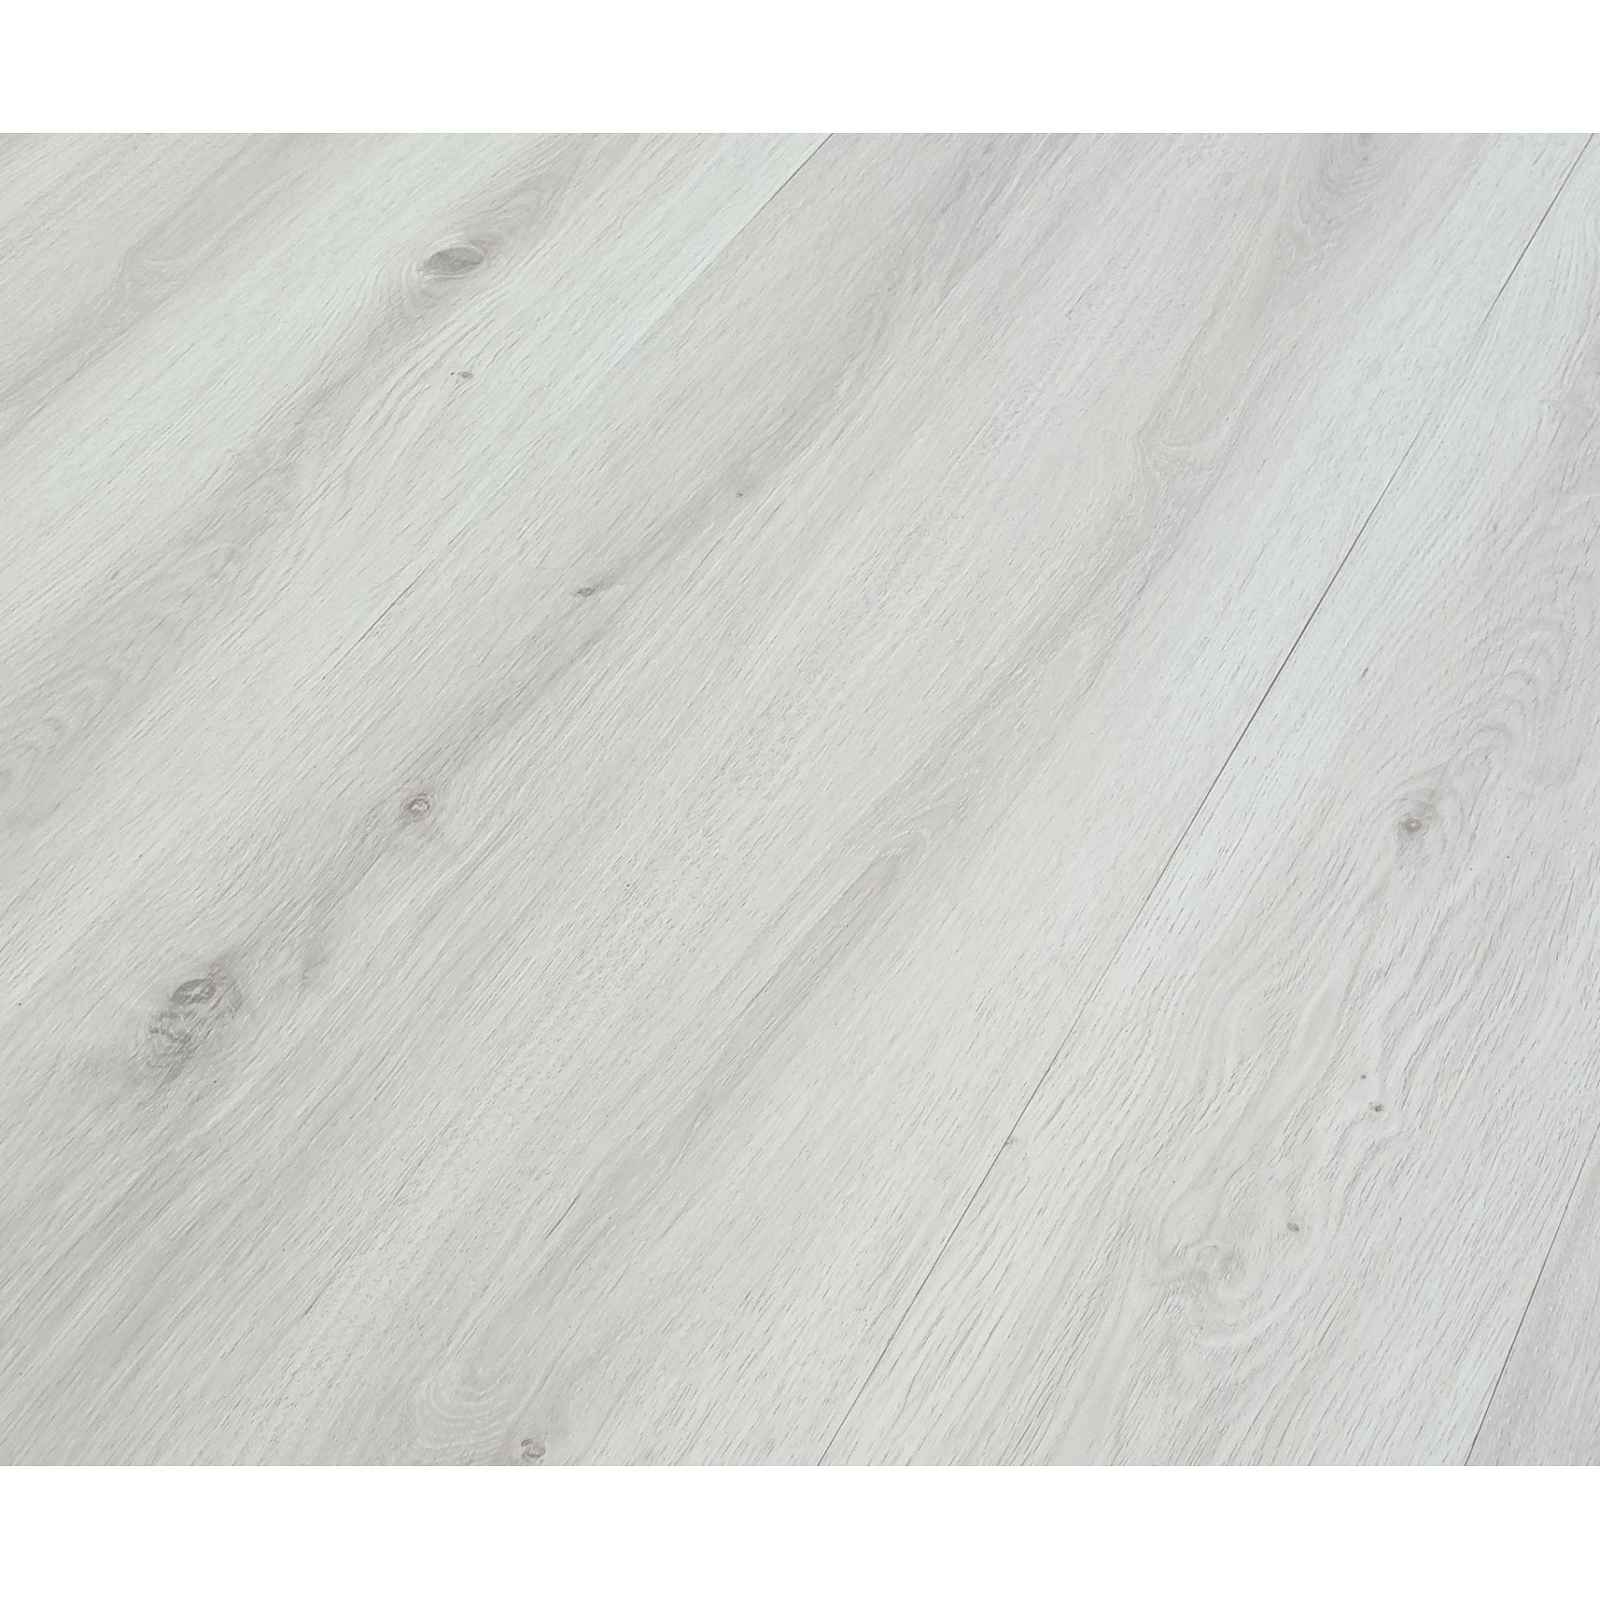 Podlaha vinylová Home arctic oak light grey